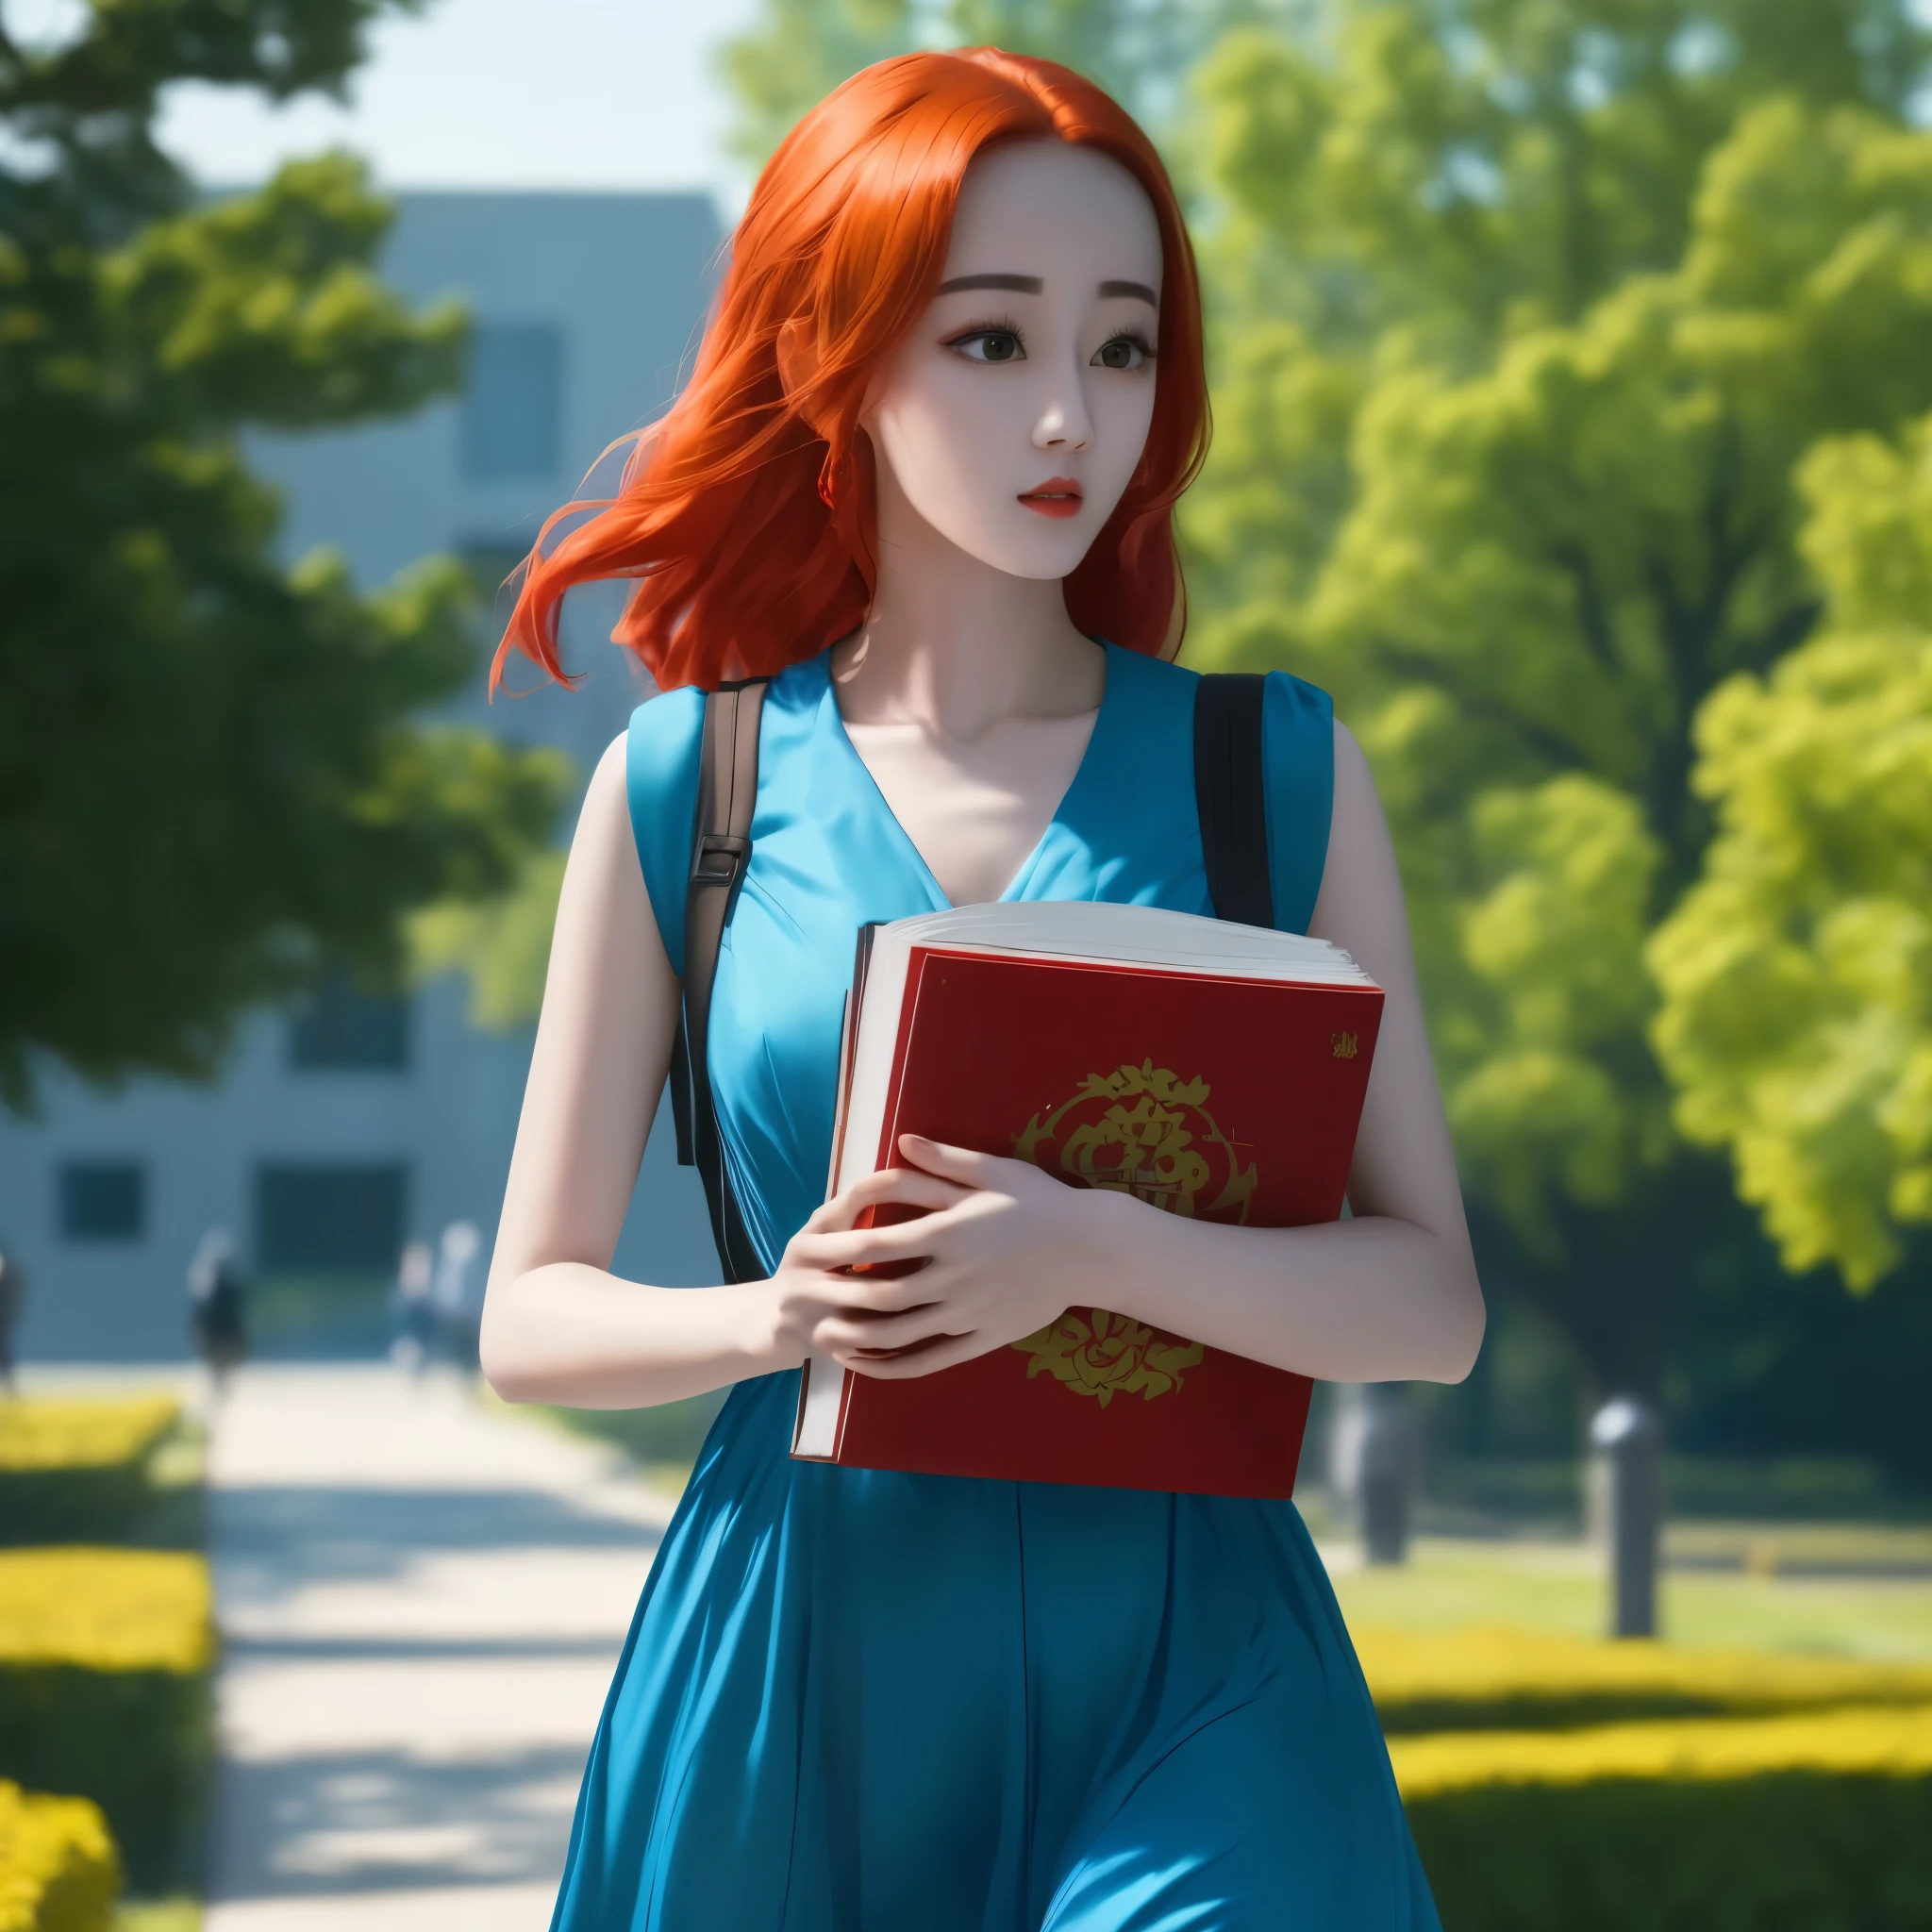 (最好的质量,4K,8千,高分辨率,杰作:1.2),极其详细, 红头发的中国大学生, 迪丽热巴, 走在校园里. 蓝色太阳裙, 携带书籍 HDR, 8千, 荒诞, 电影 800, 清晰聚焦